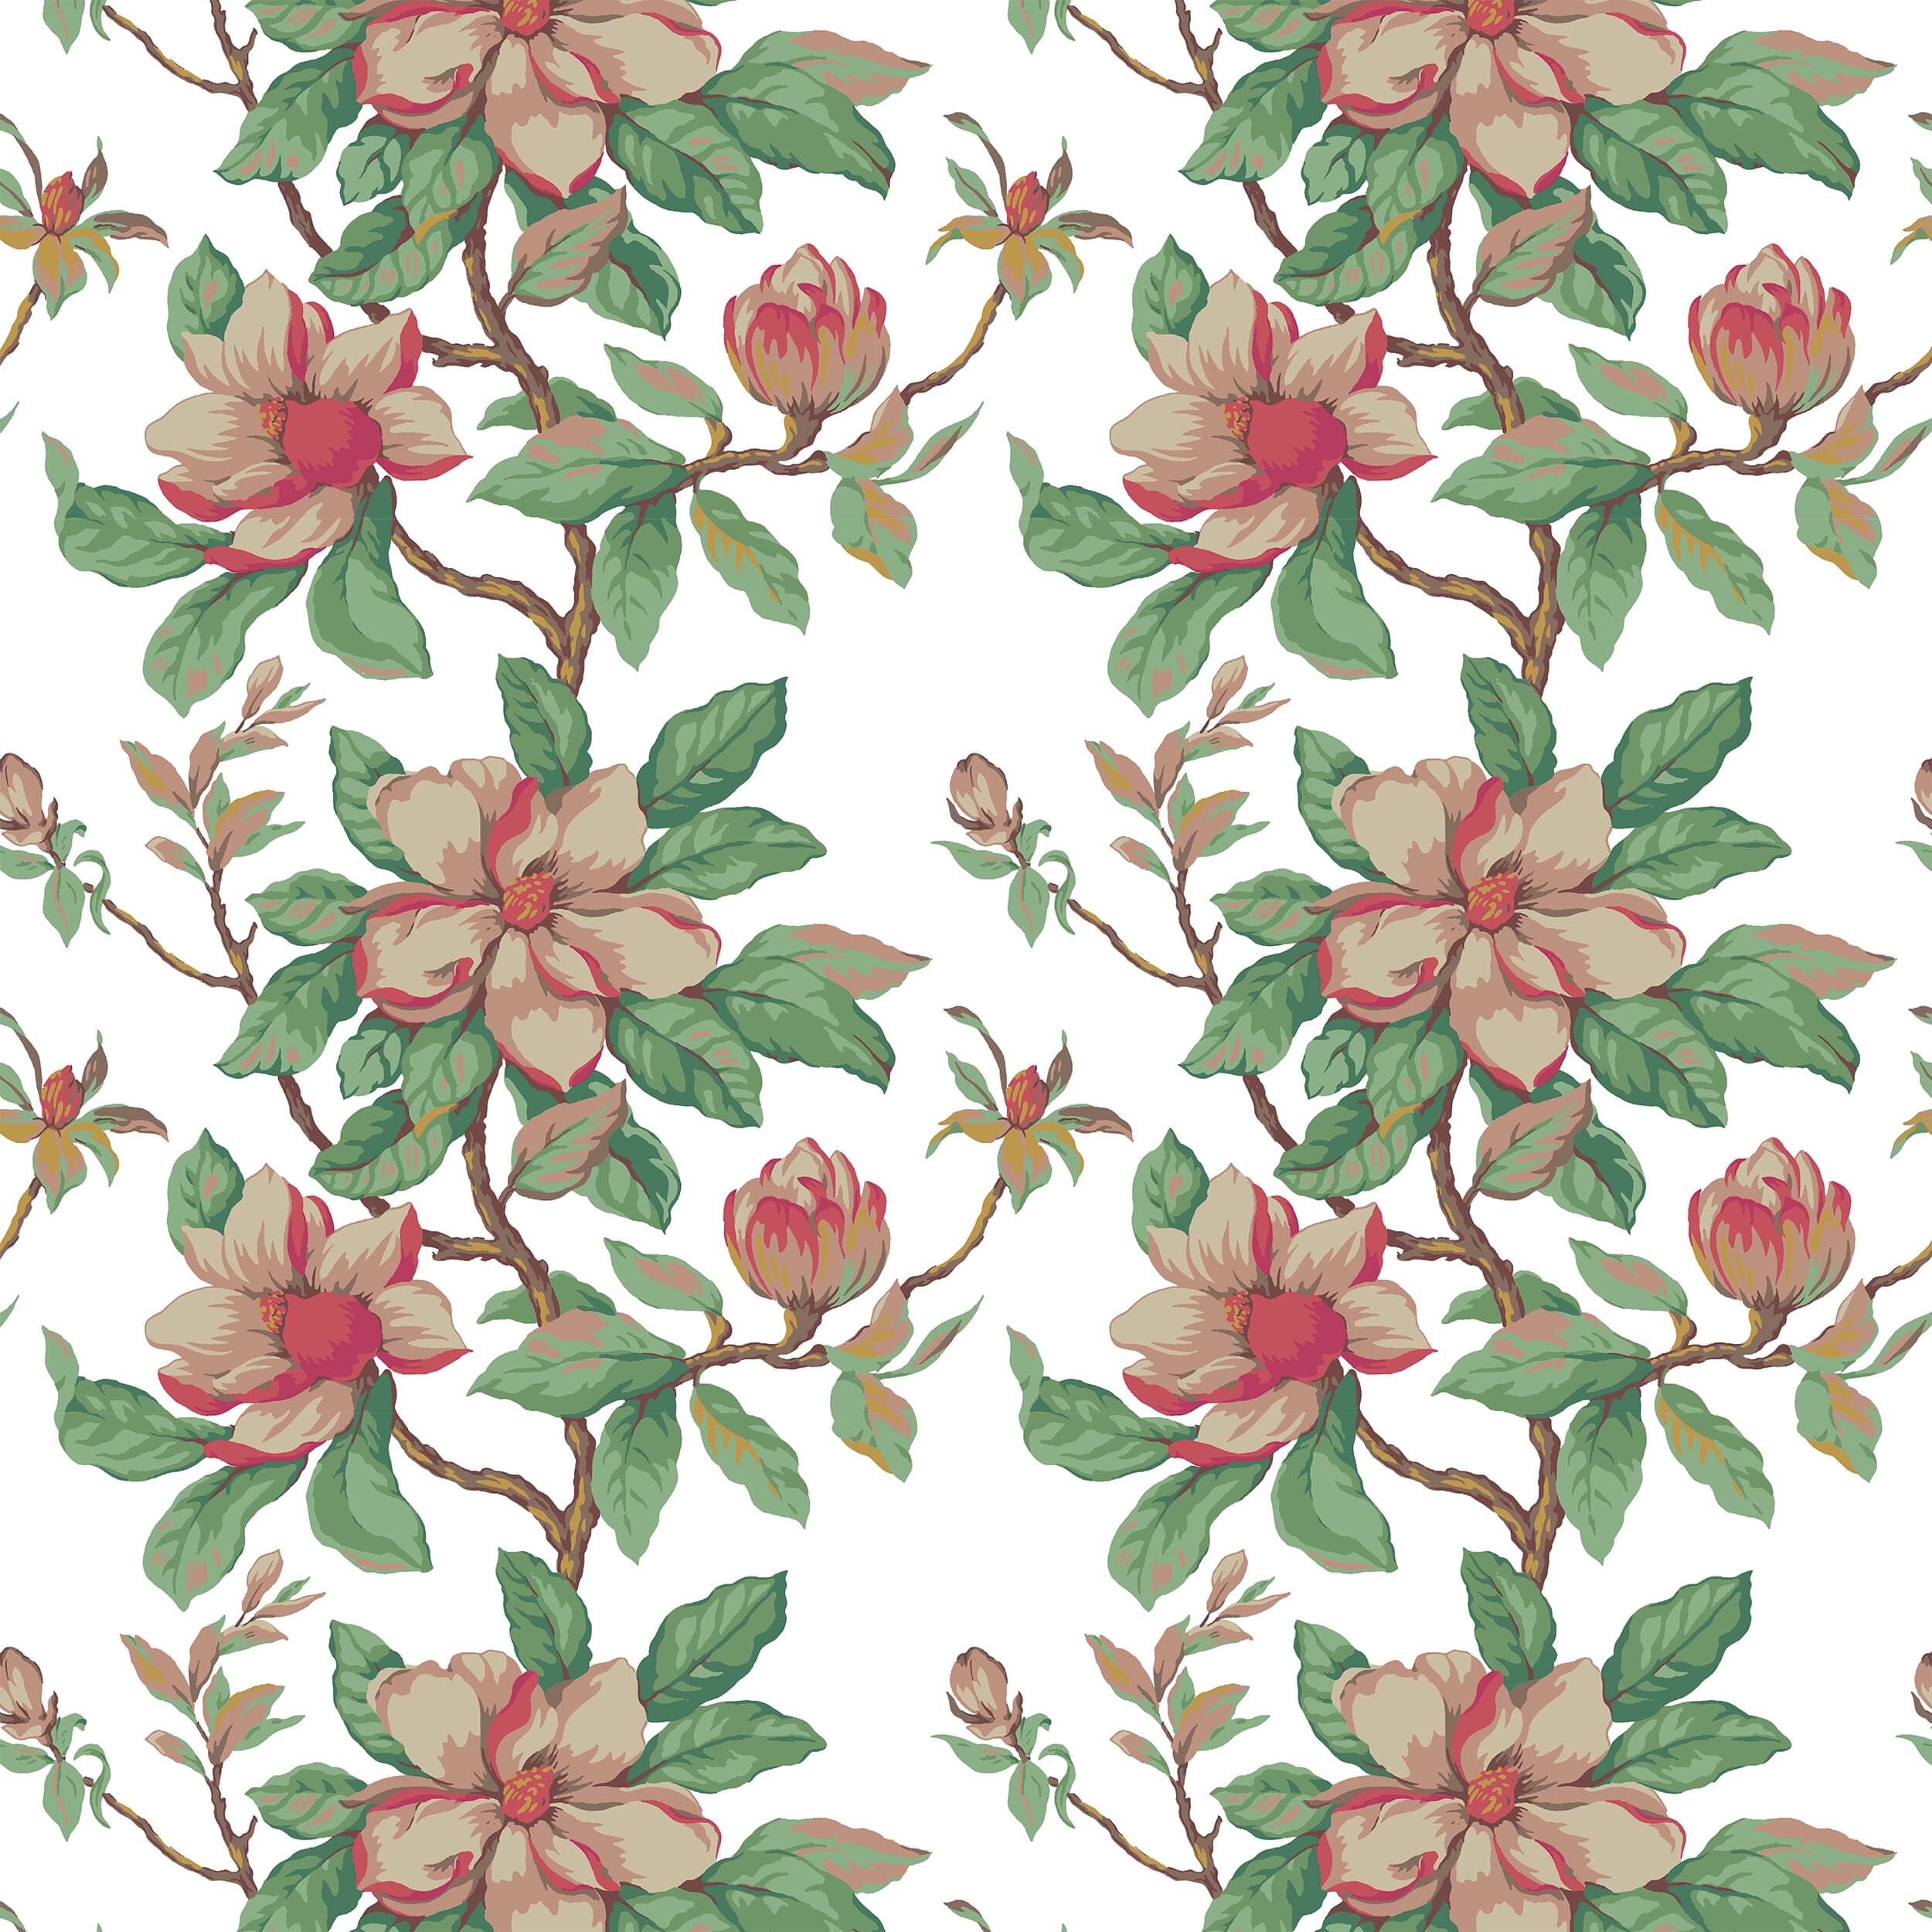 7460-3 Magnolia Grandiflora by Stout Fabric